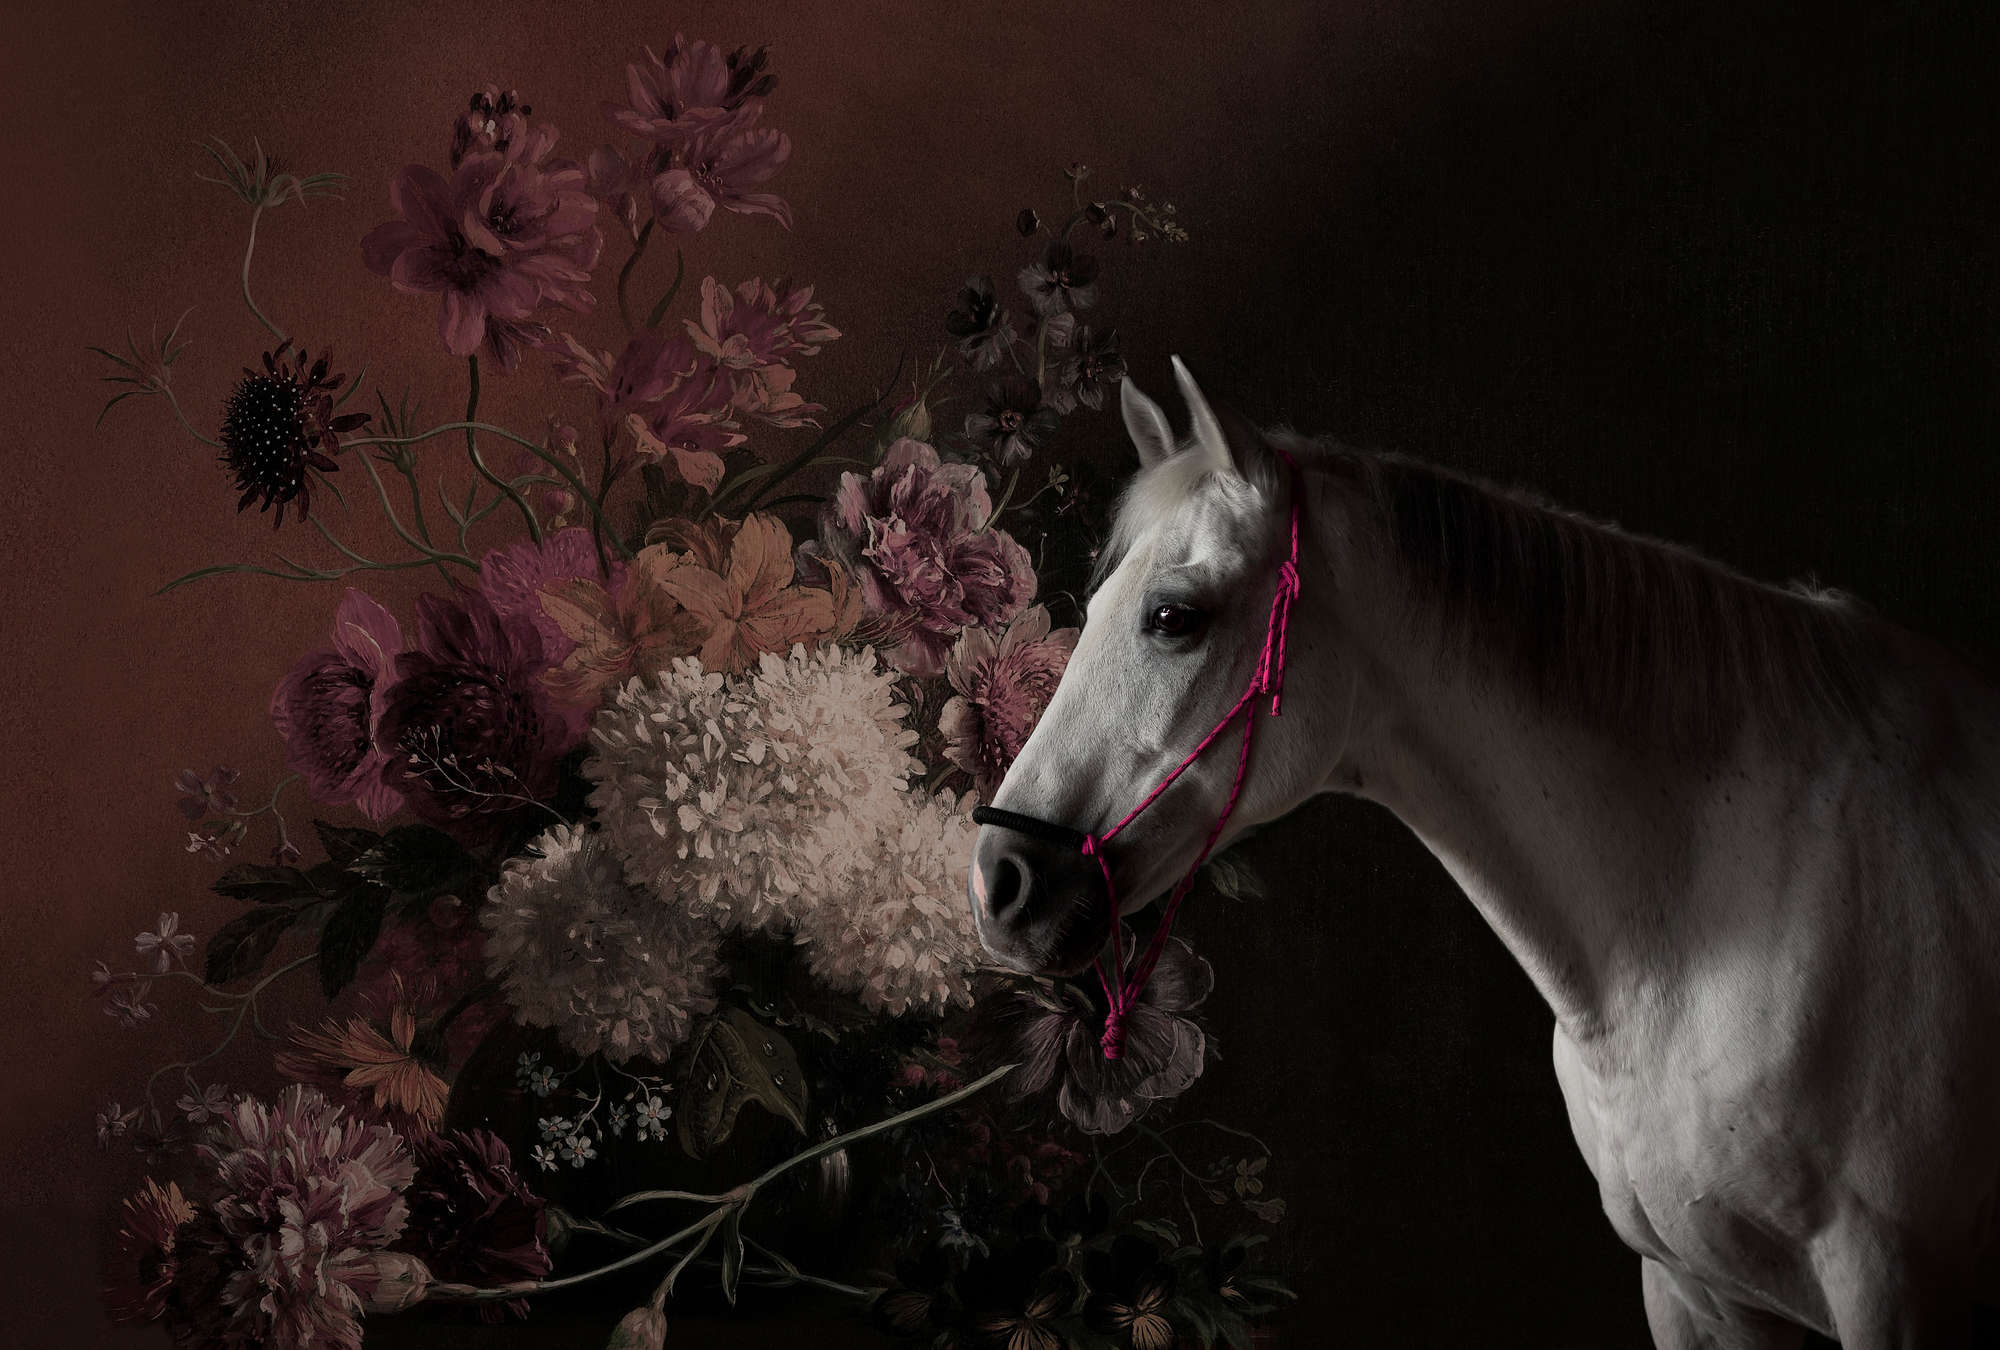             Ritratto di cavallo con fiori - Walls by Patel
        